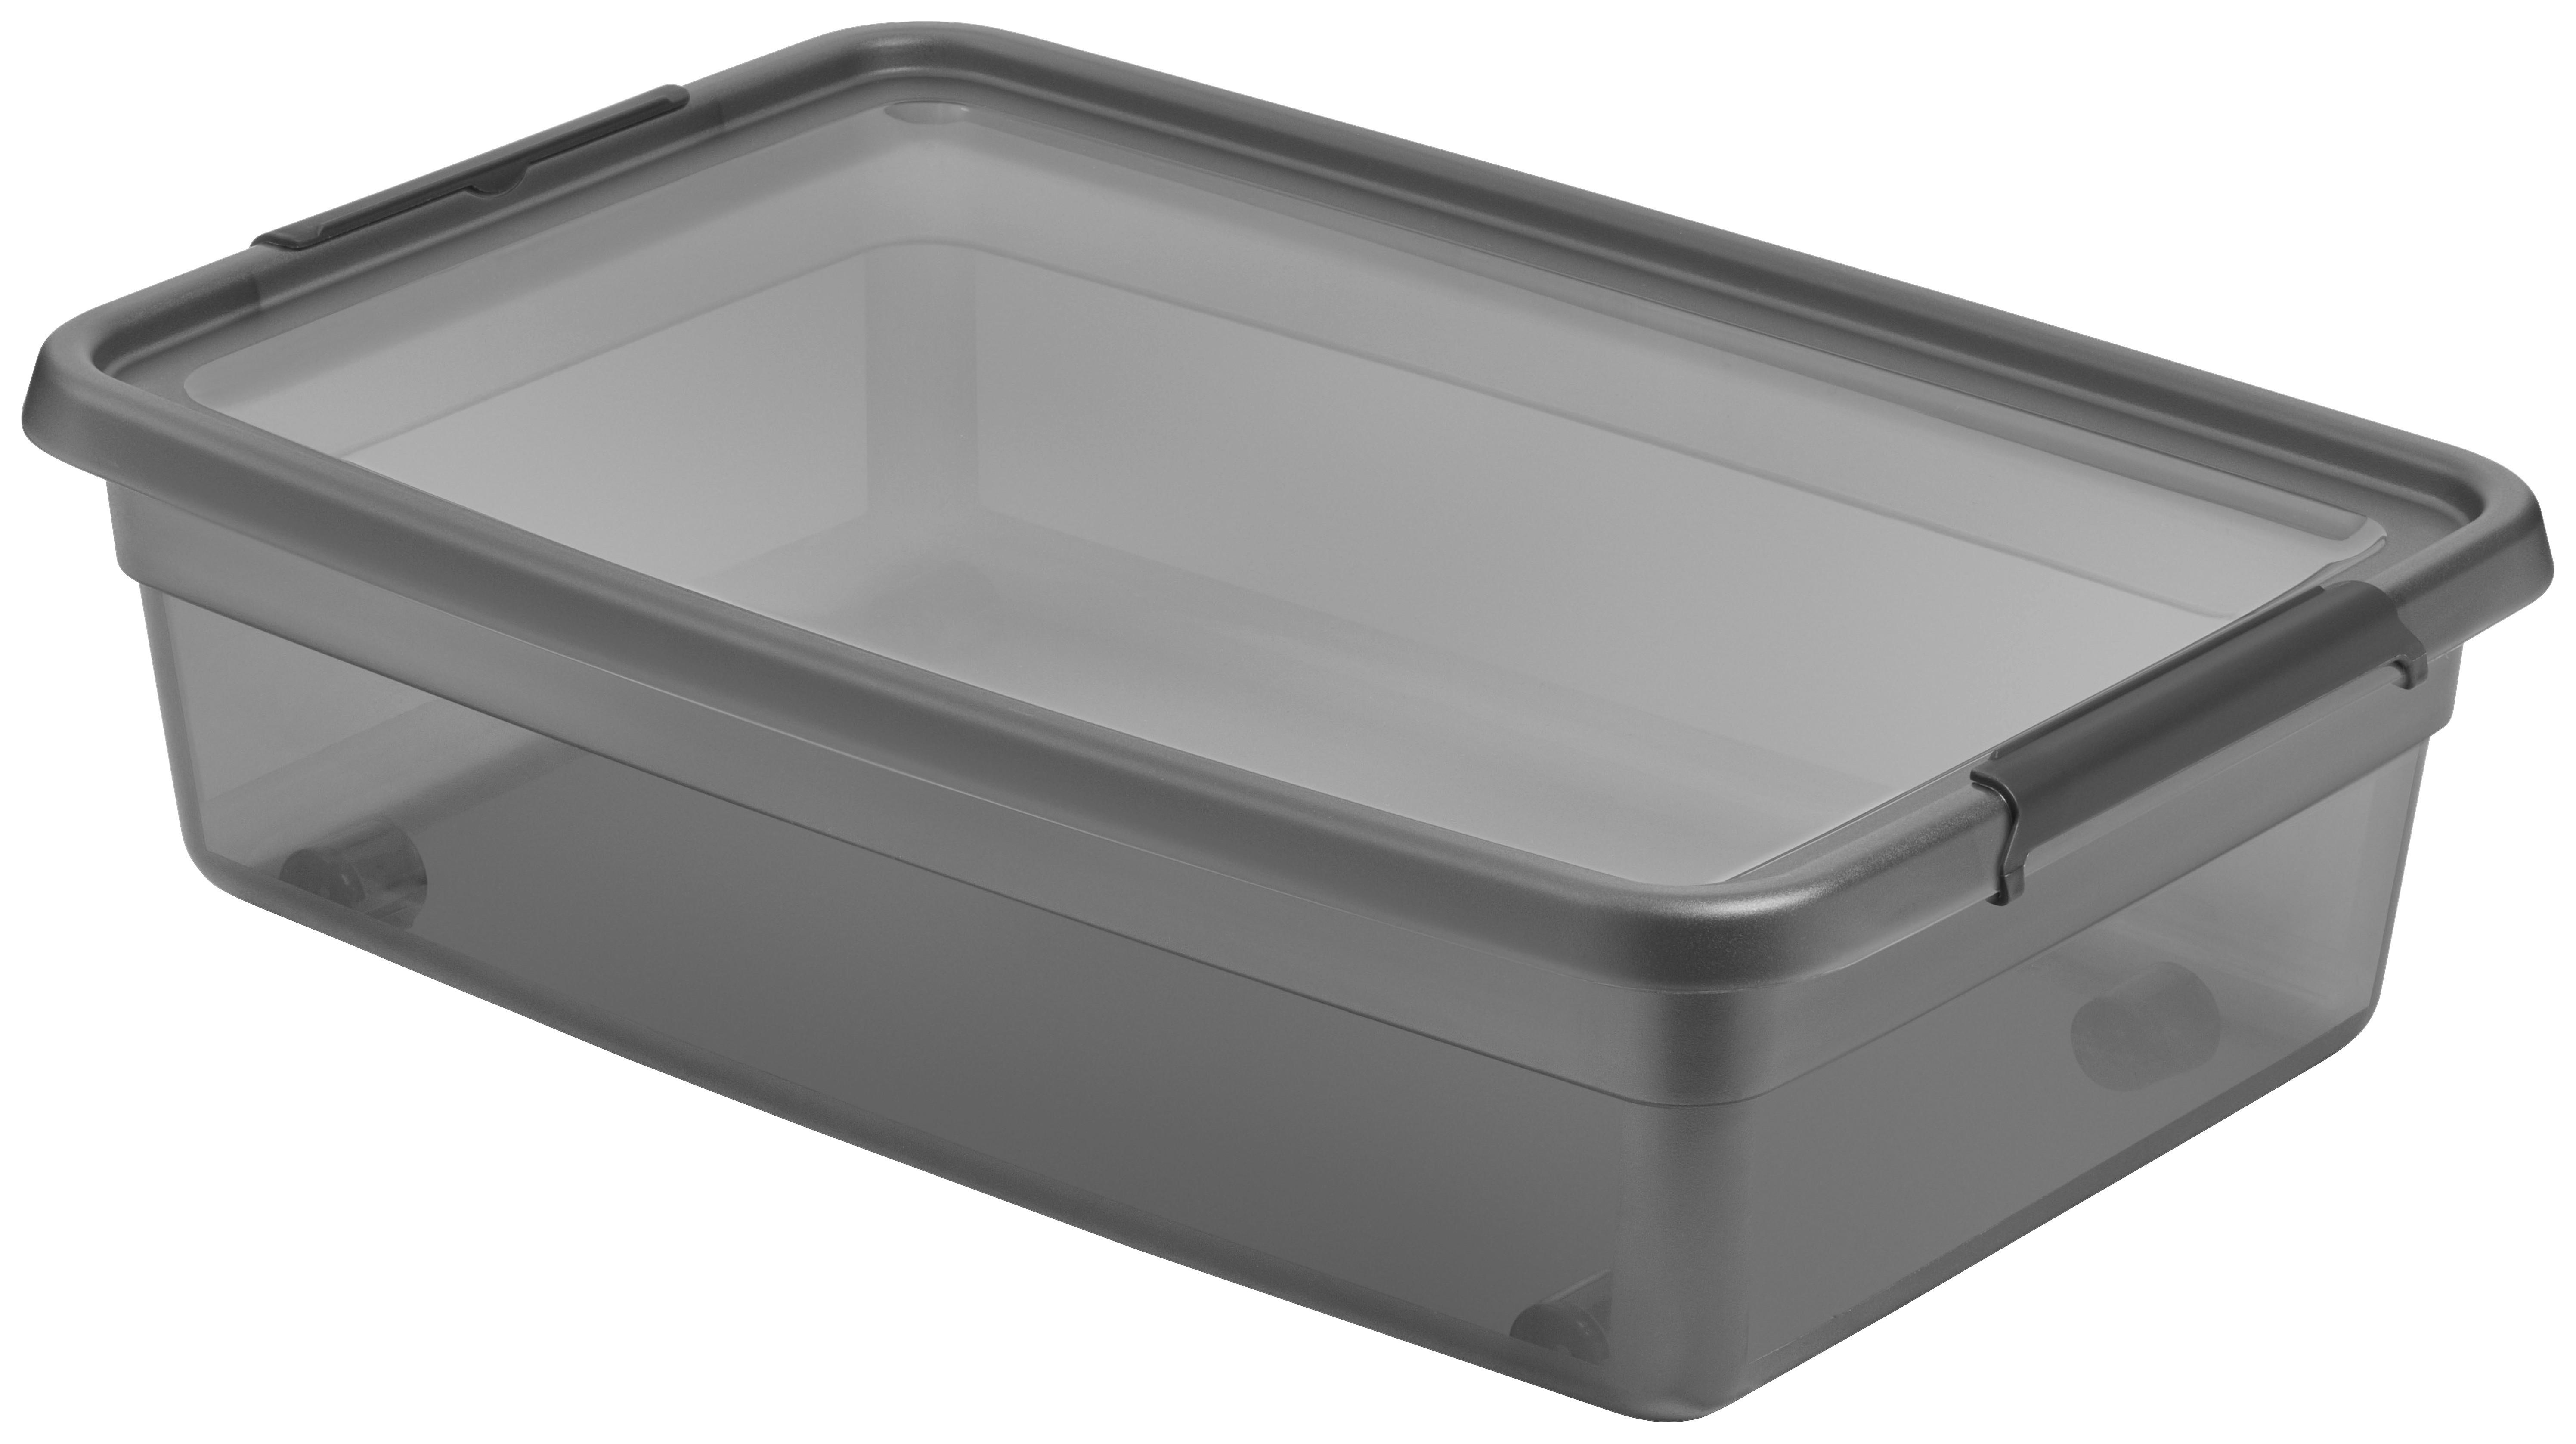 Aufbewahrungsbox Blacky in Schwarz ca. 25l - Transparent/Schwarz, Modern, Kunststoff (58/39/16cm) - Premium Living